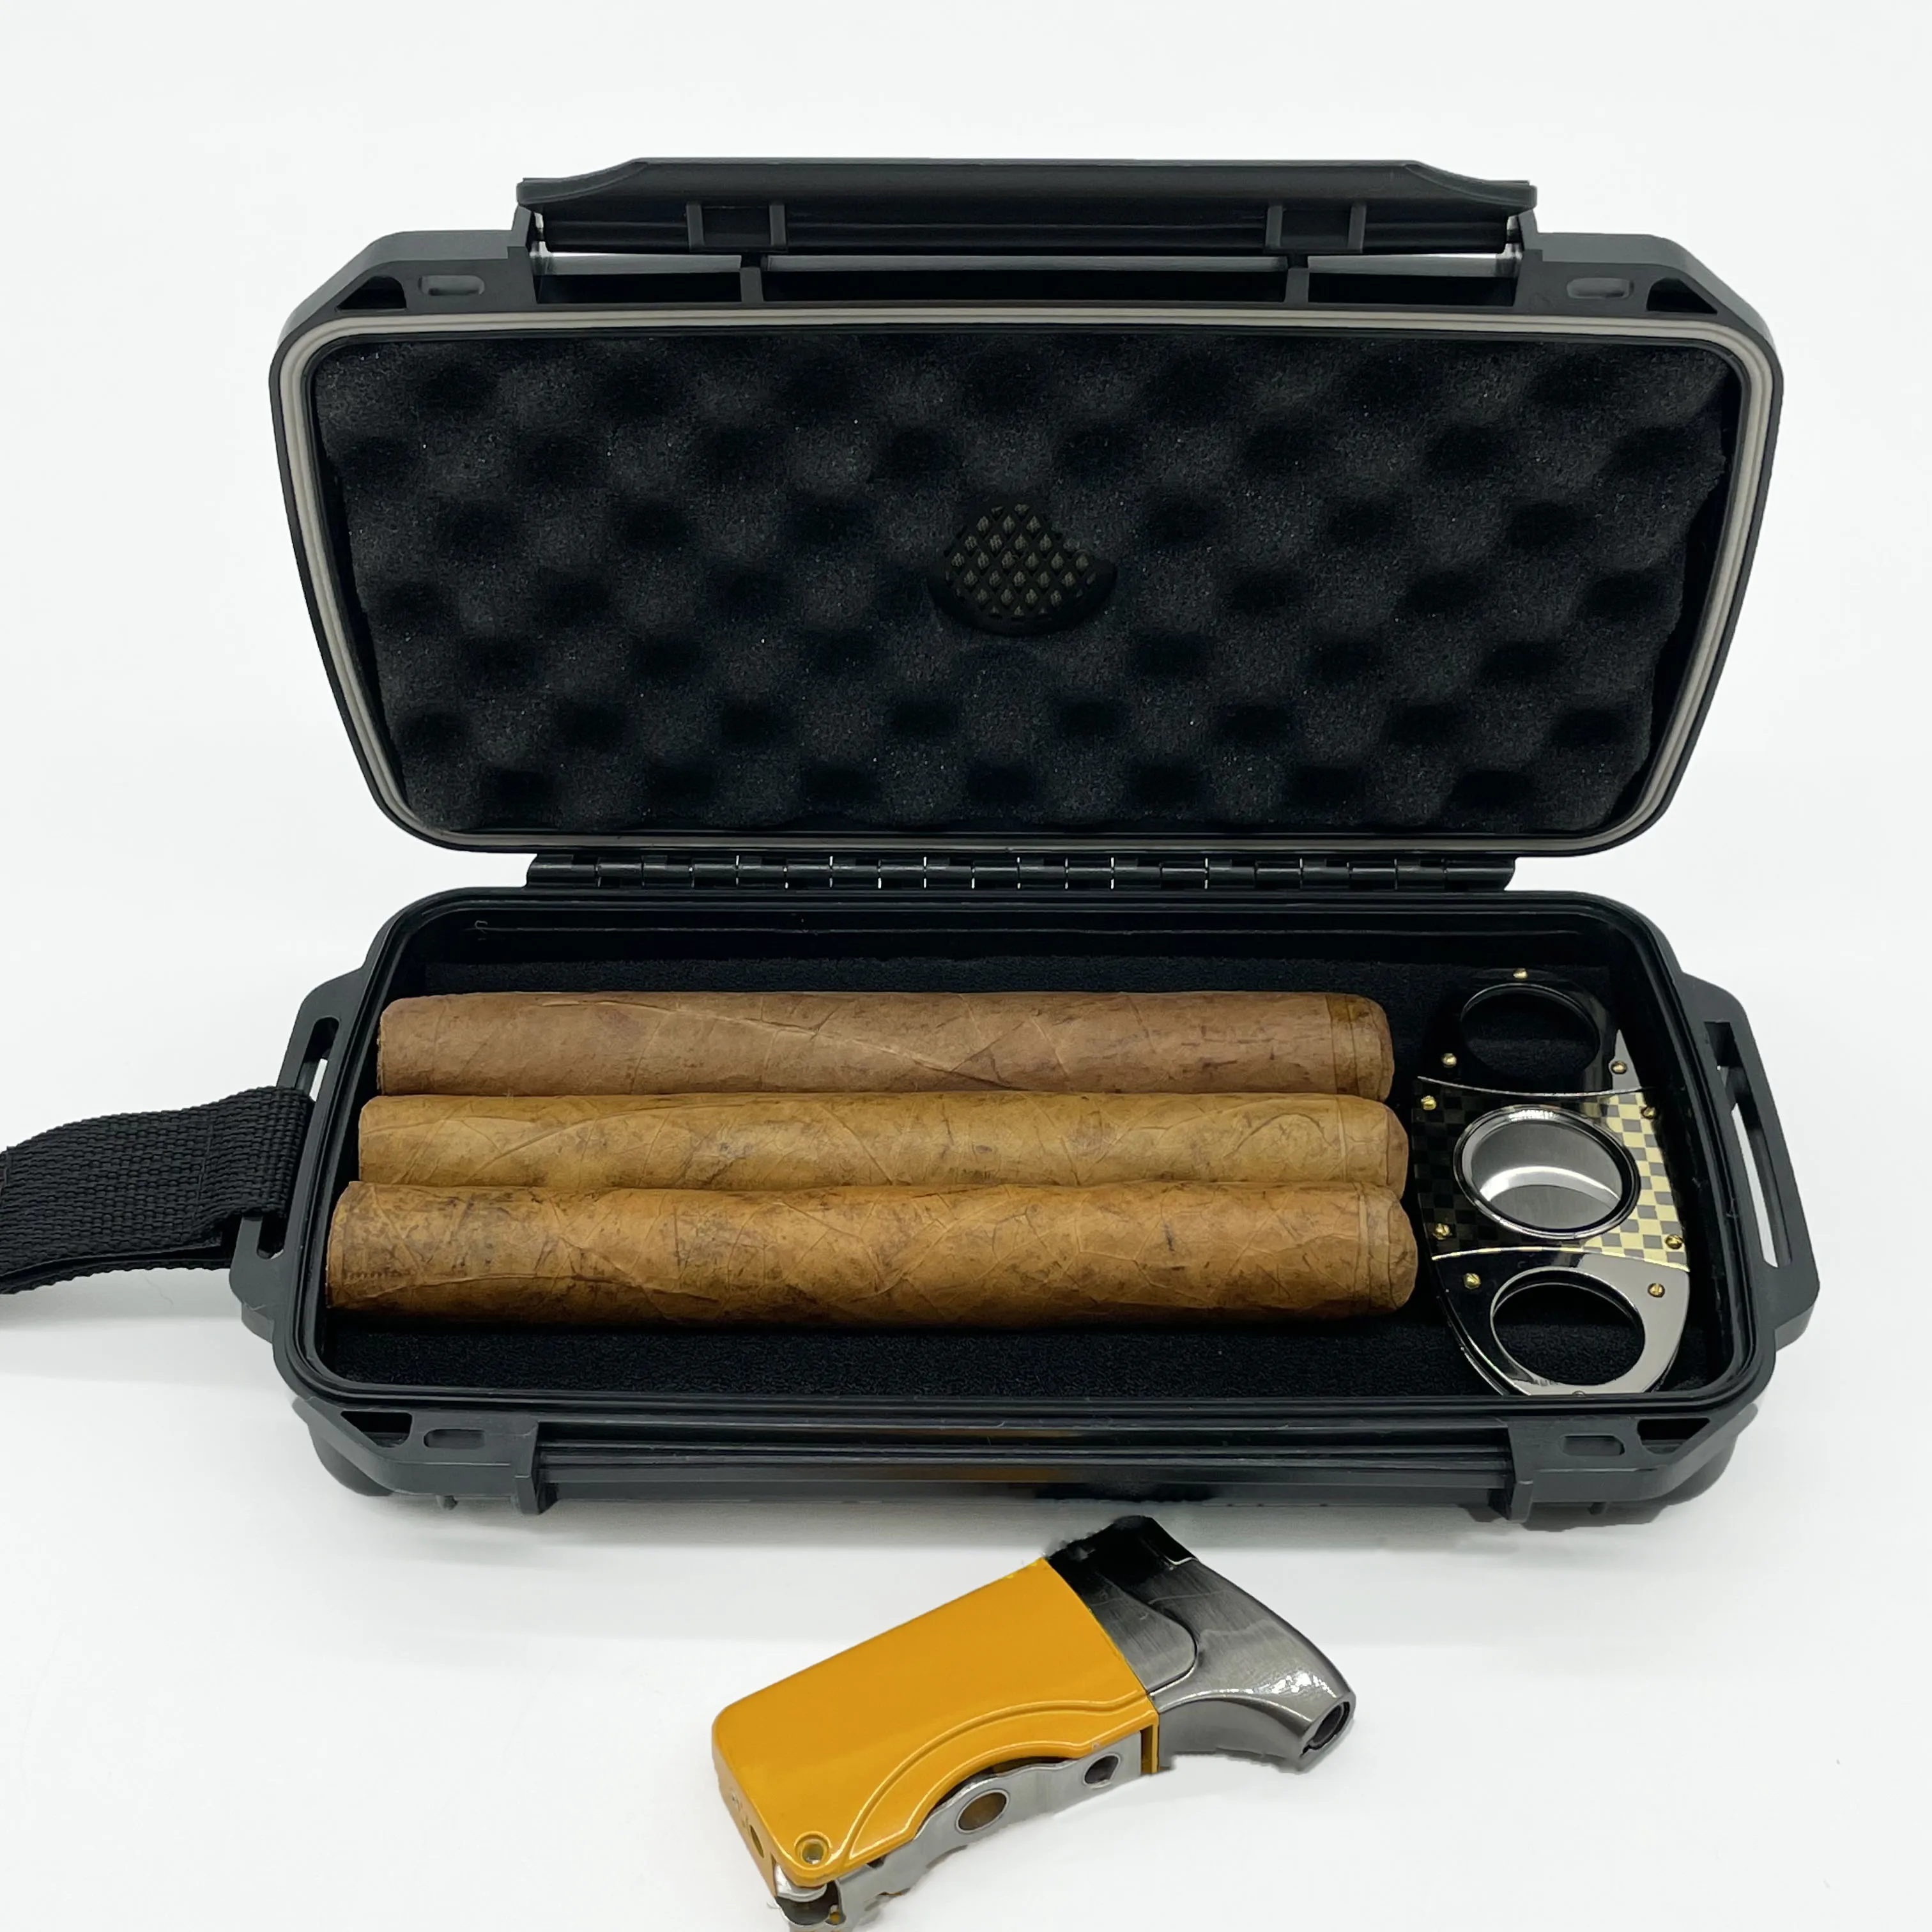 

Travel humidor cigar box pocket humidor cigar accessories gift sets traveling hard shell humidor cigar case, Black